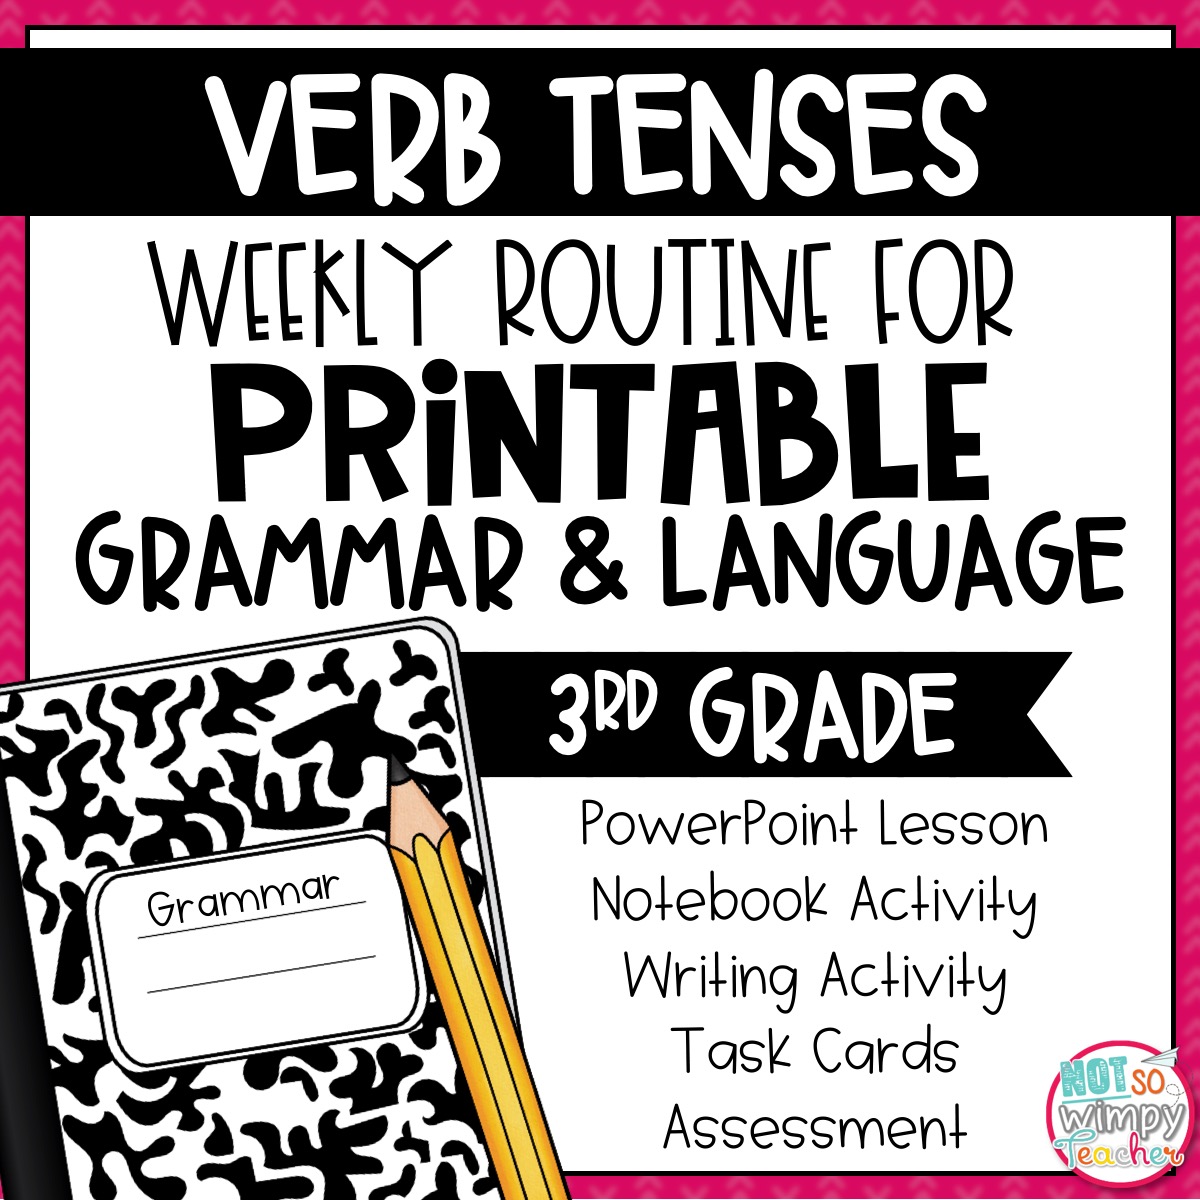 grammar-third-grade-activities-verb-tenses-not-so-wimpy-teacher